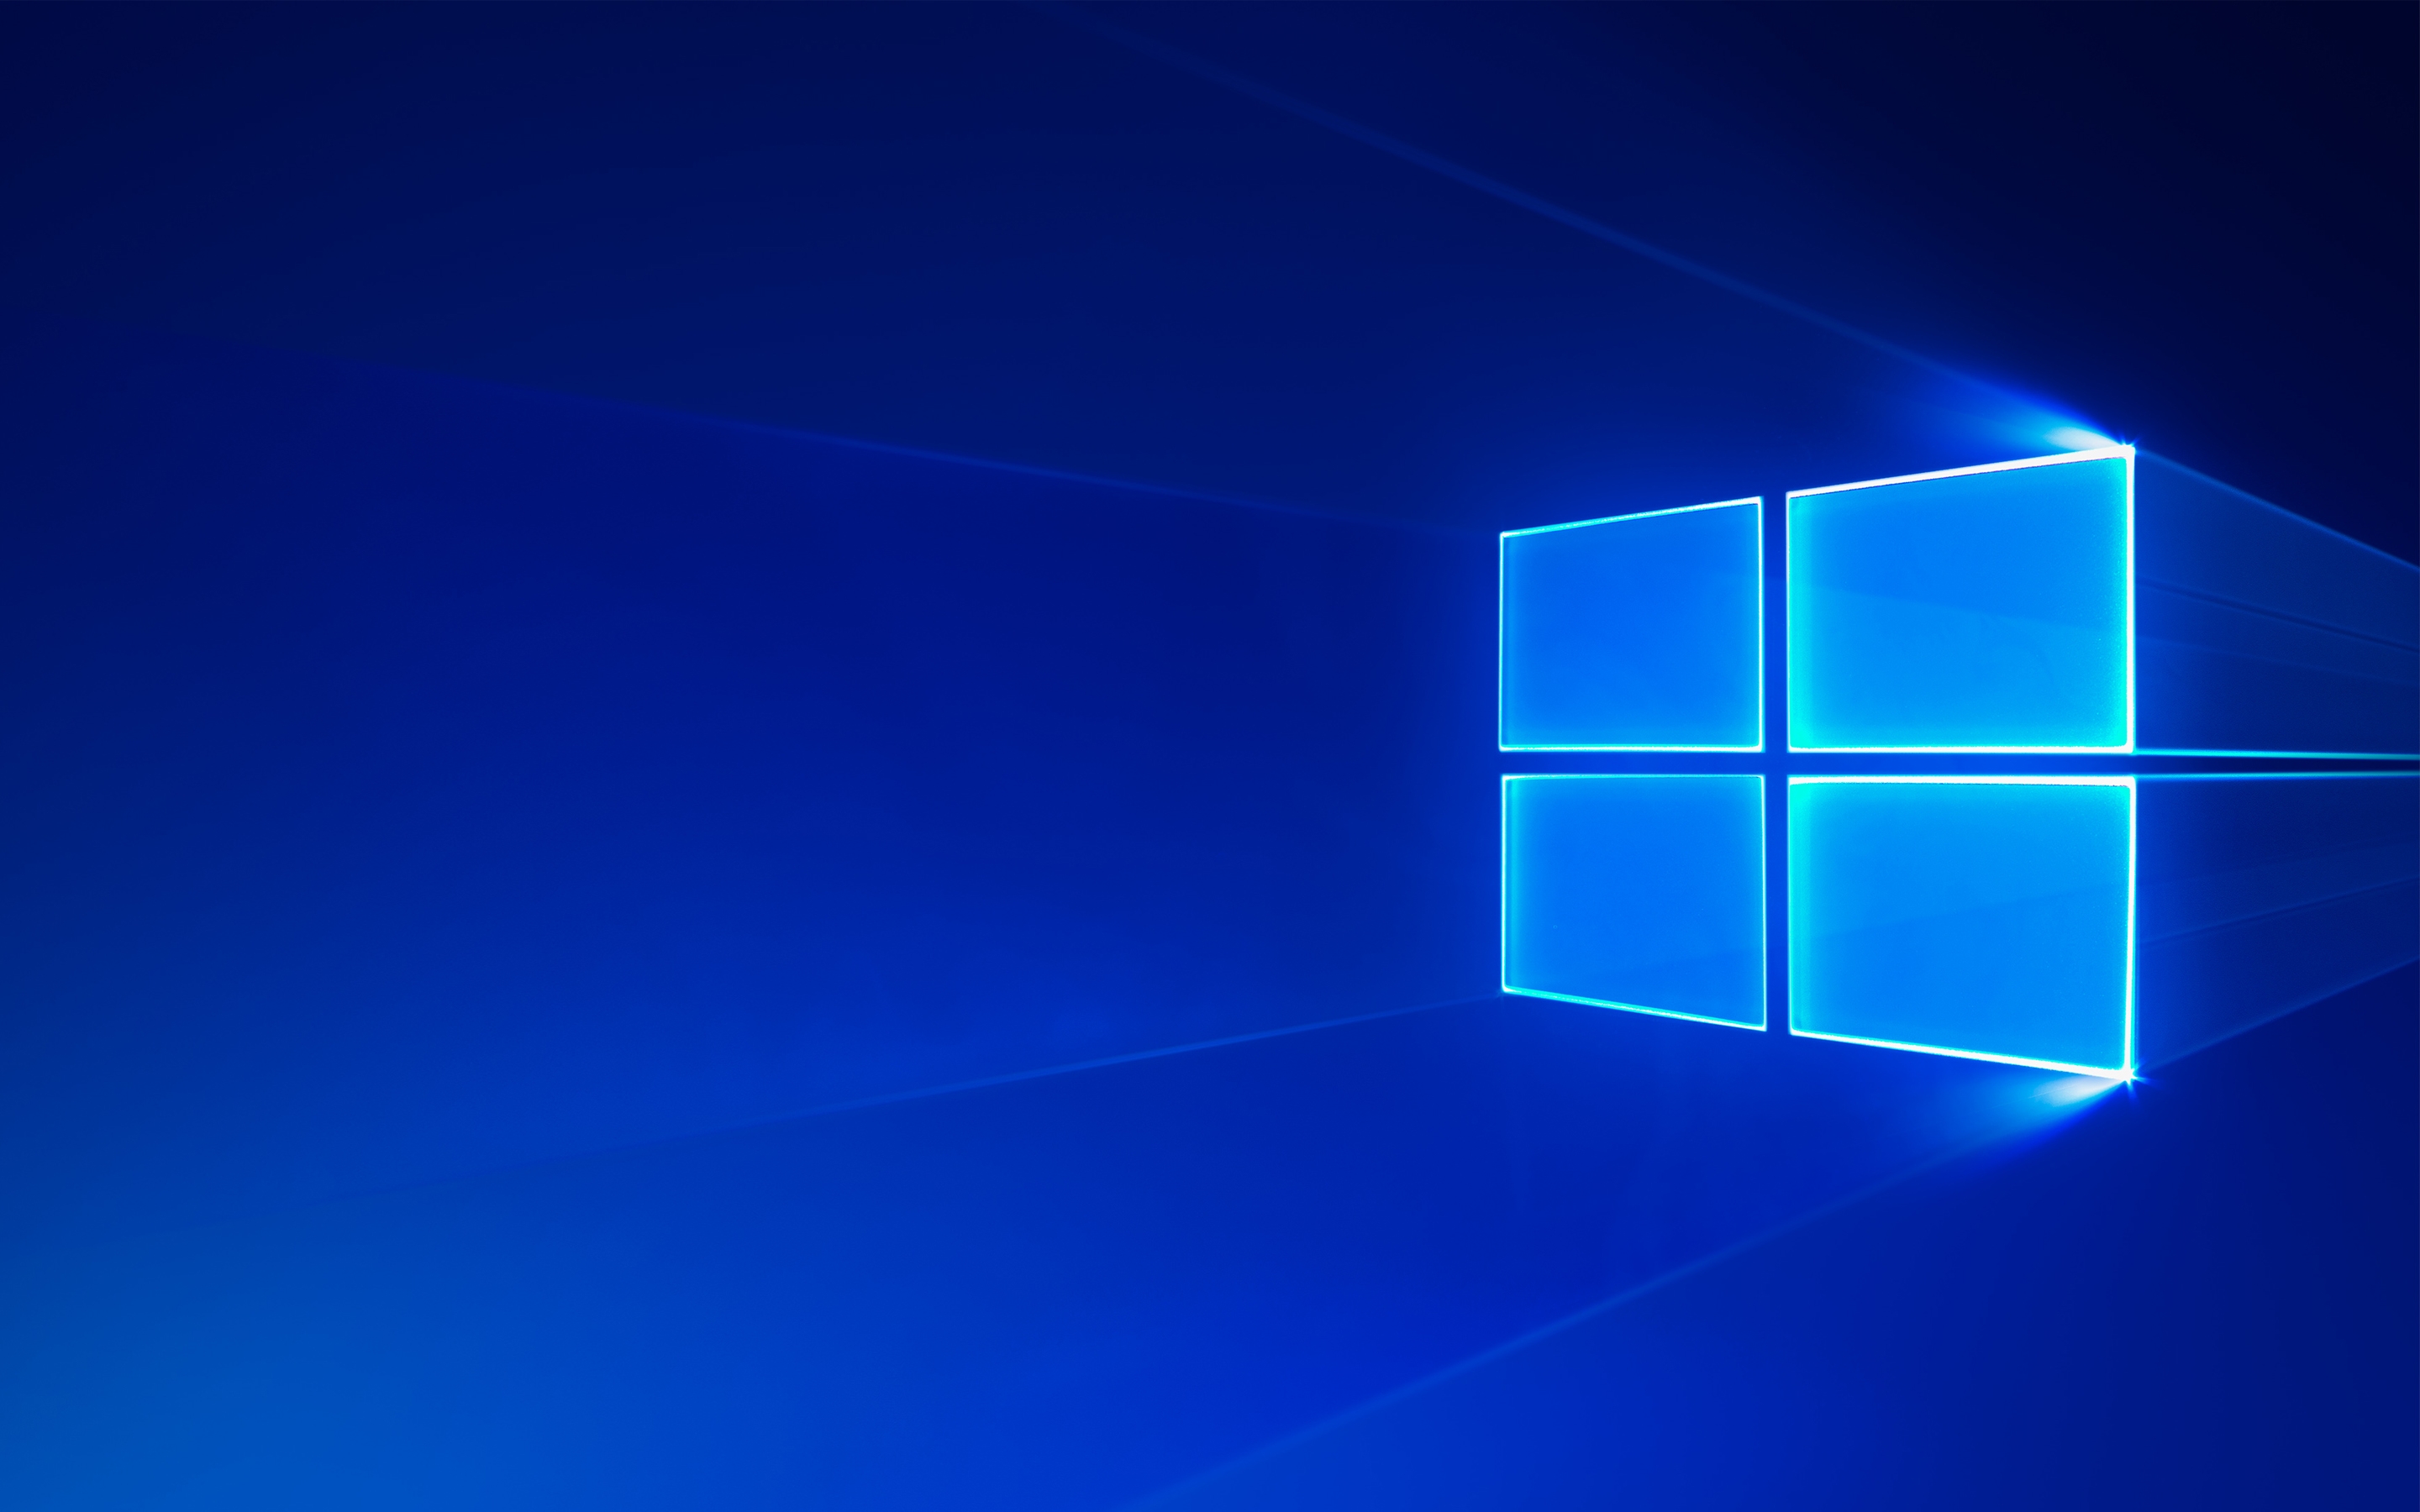 Бесплатное фото Стоковое фото заставки Windows 10 синего цвета